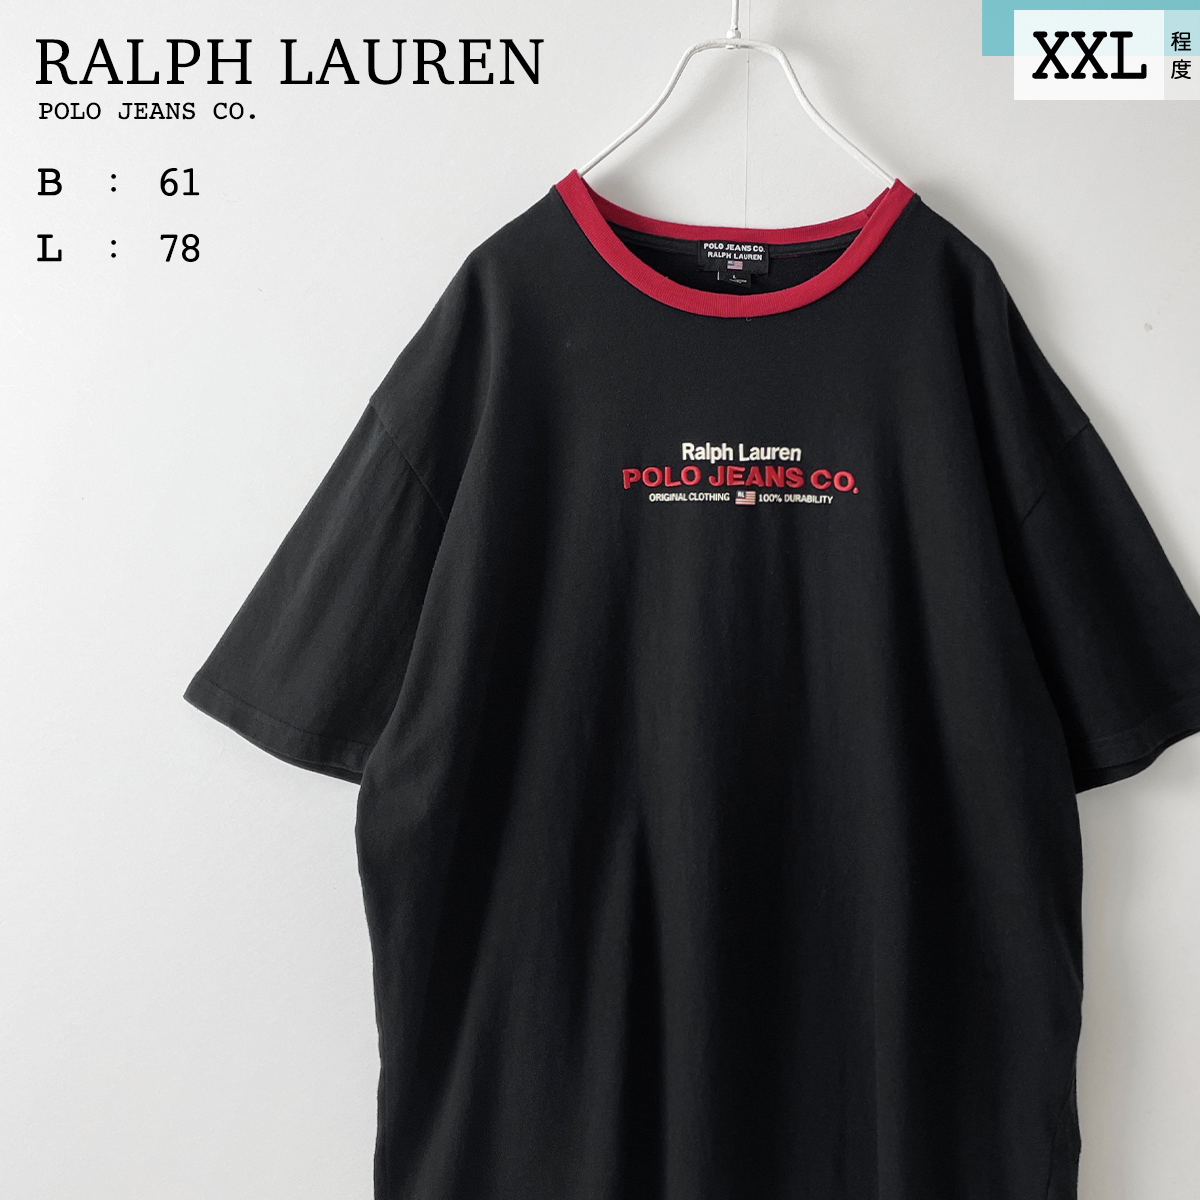 全国宅配無料 黒 Tシャツ リンガー 半袖 オーバーサイズ LAUREN RALPH